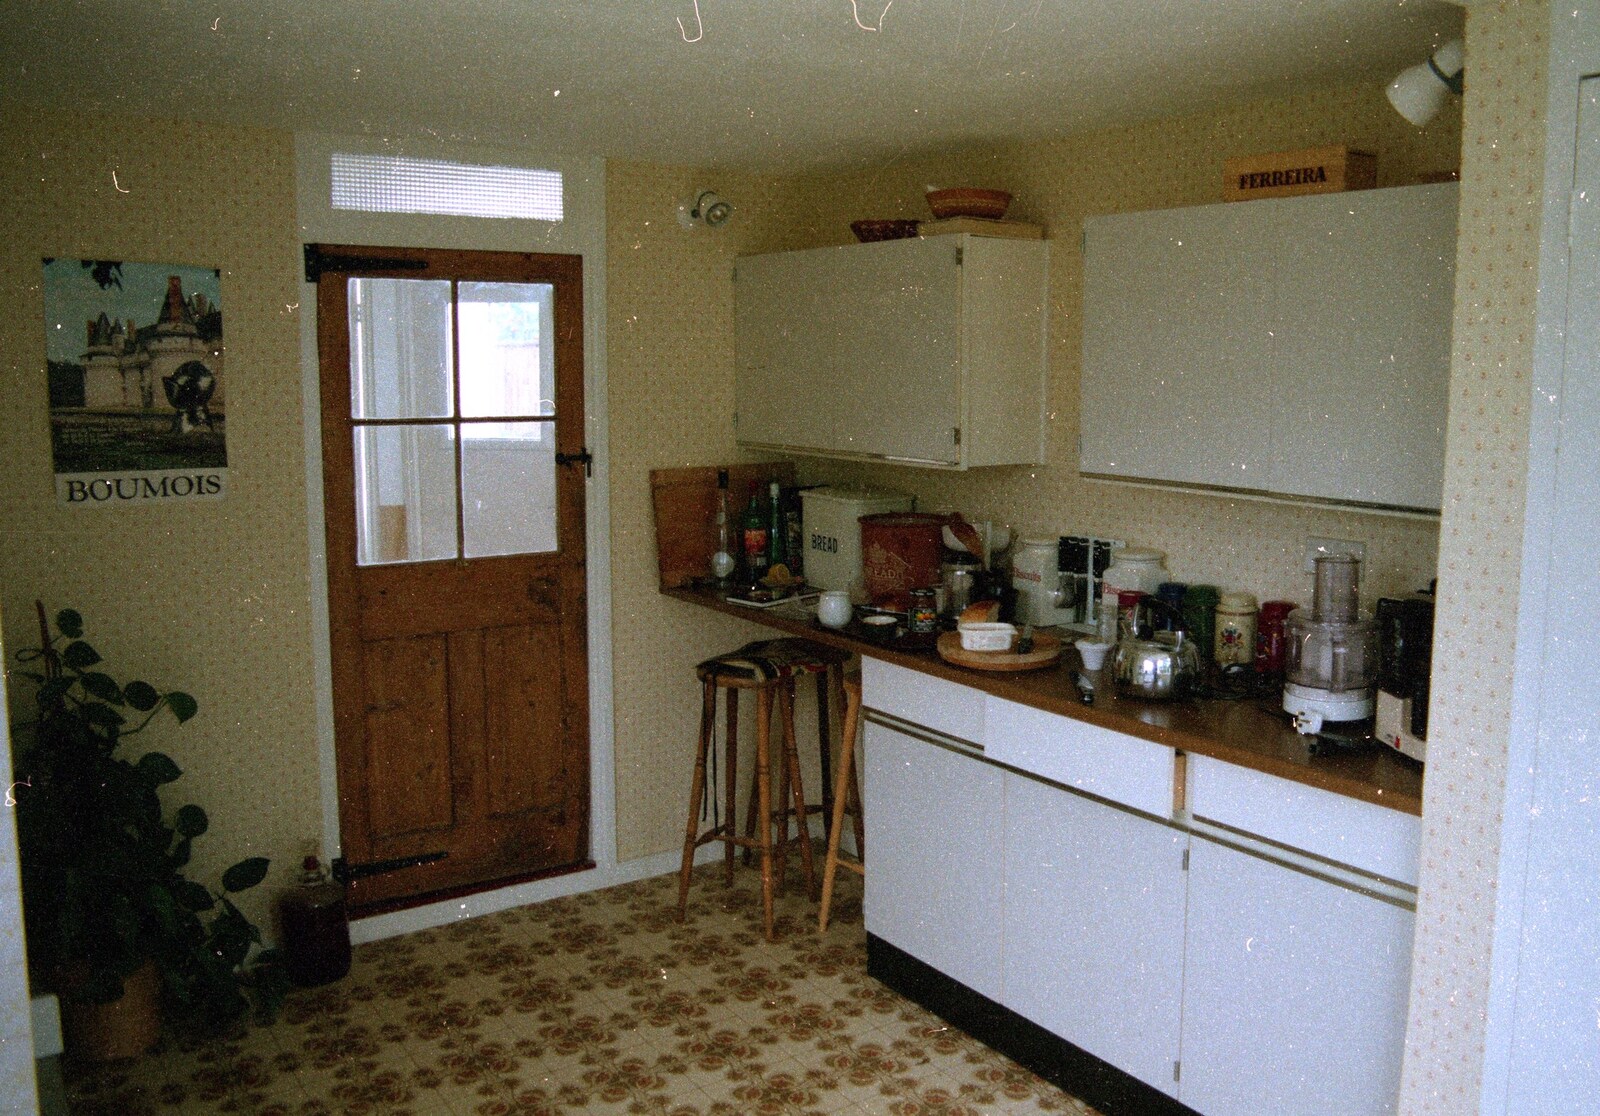 Bracken Way kitchen from A Trip to Bracken Way, Walkford, Dorset - 8th September 1987